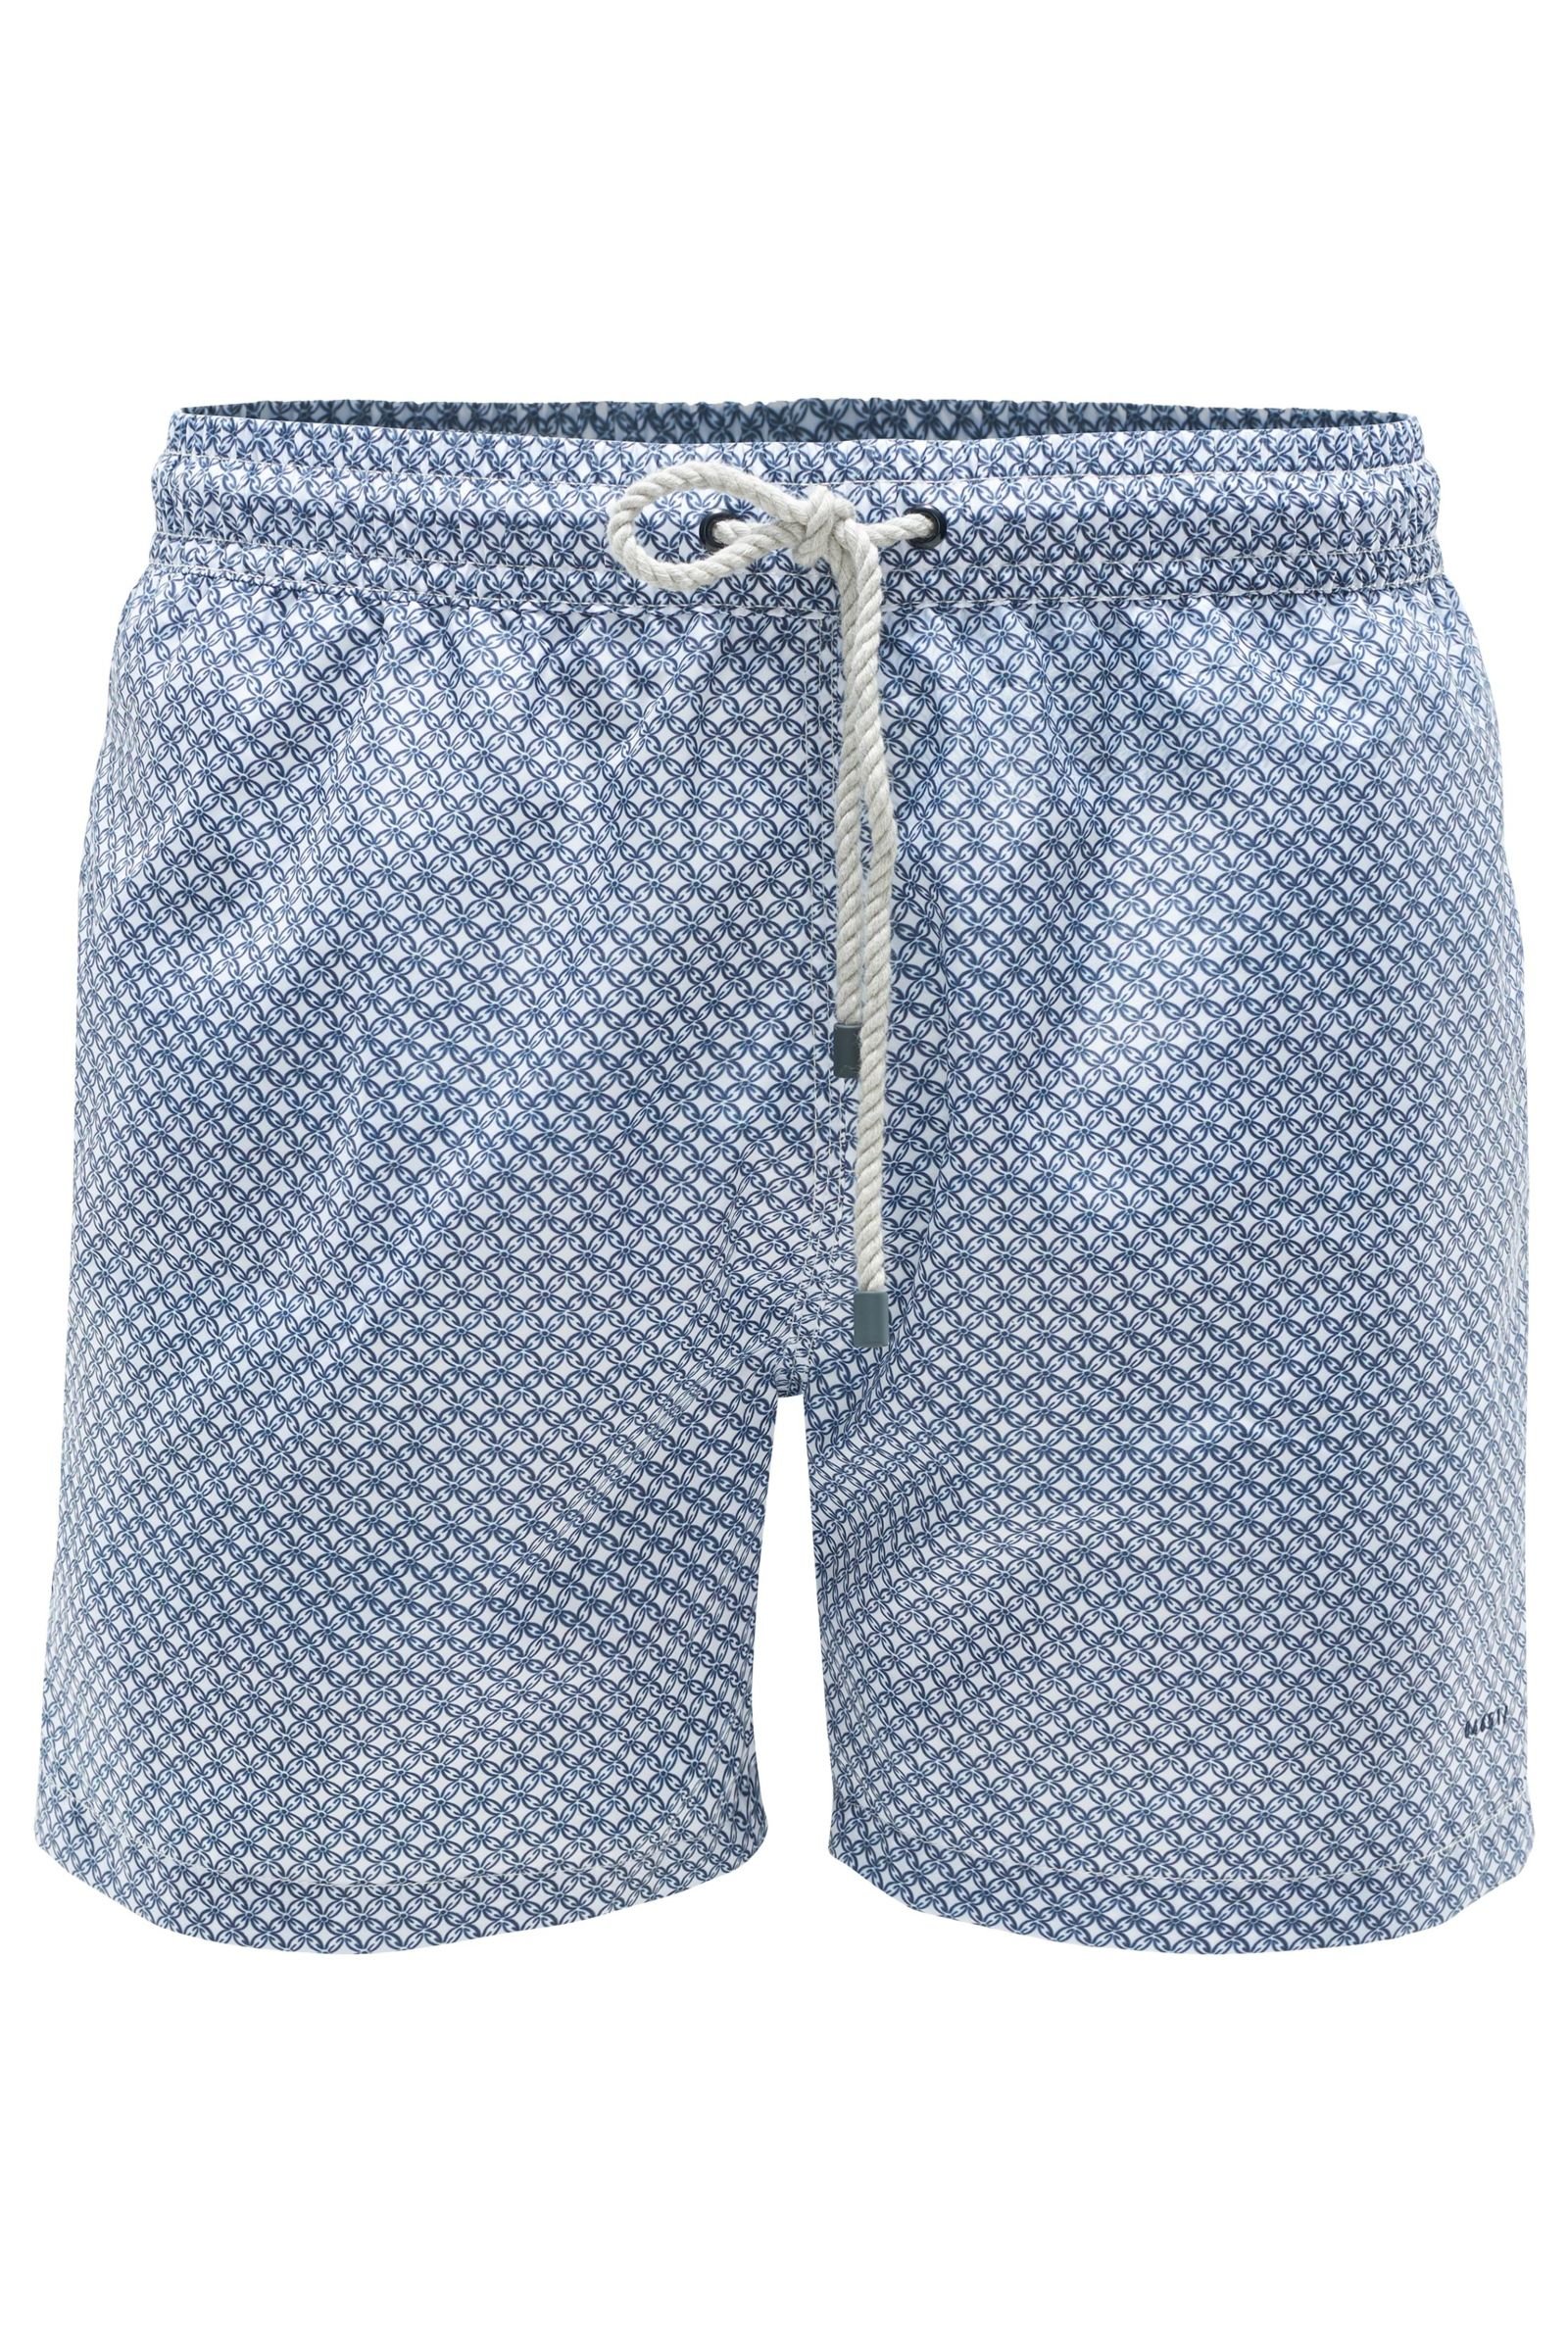 Swim shorts white/grey-blue patterned